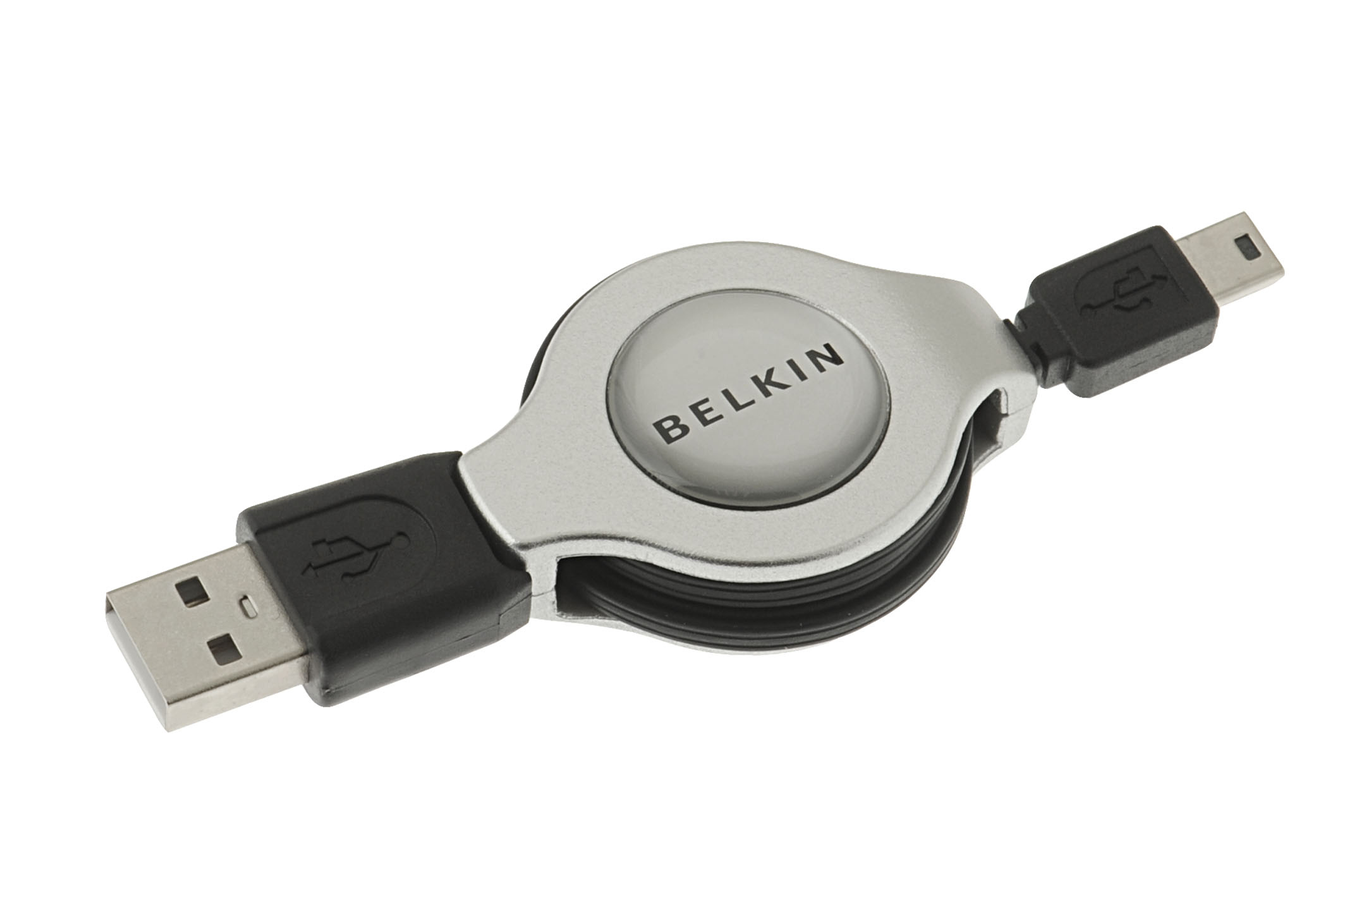 Câble USB Belkin USB A/Mini B Enrouleur 1M USBA/MiniBEnrouleur1M